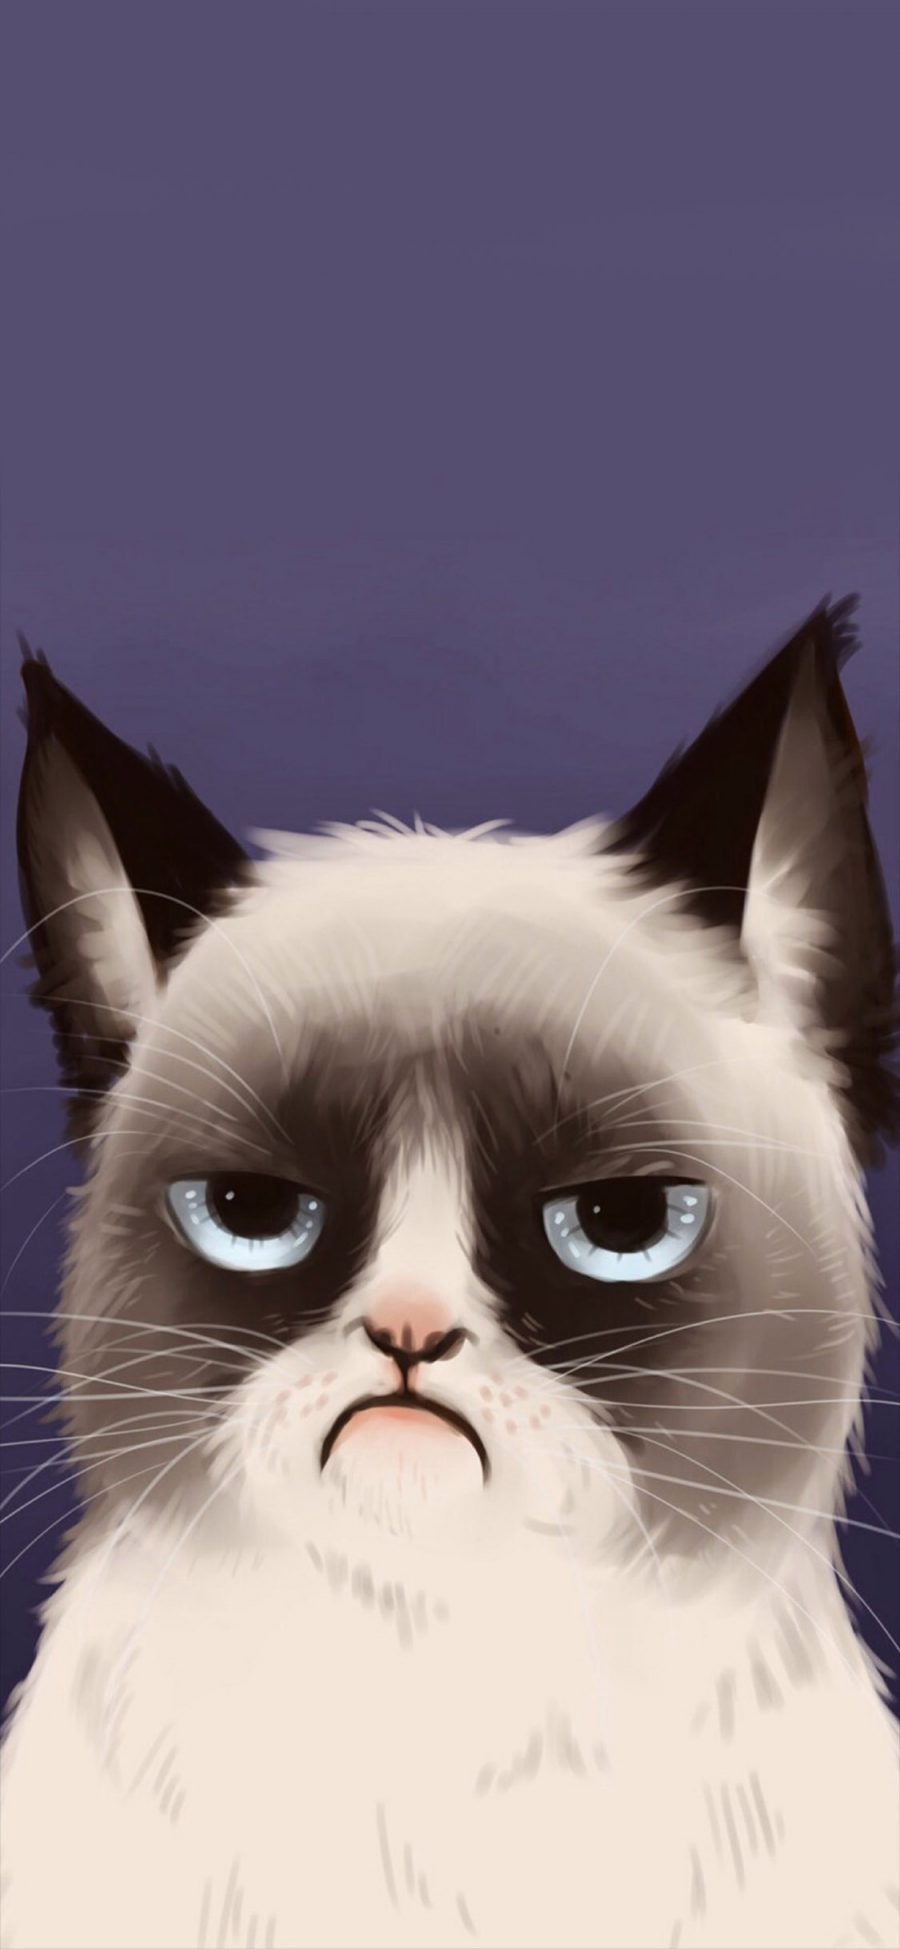 [2436×1125]可爱 猫咪 动漫 彩色 手绘 苹果手机动漫壁纸图片